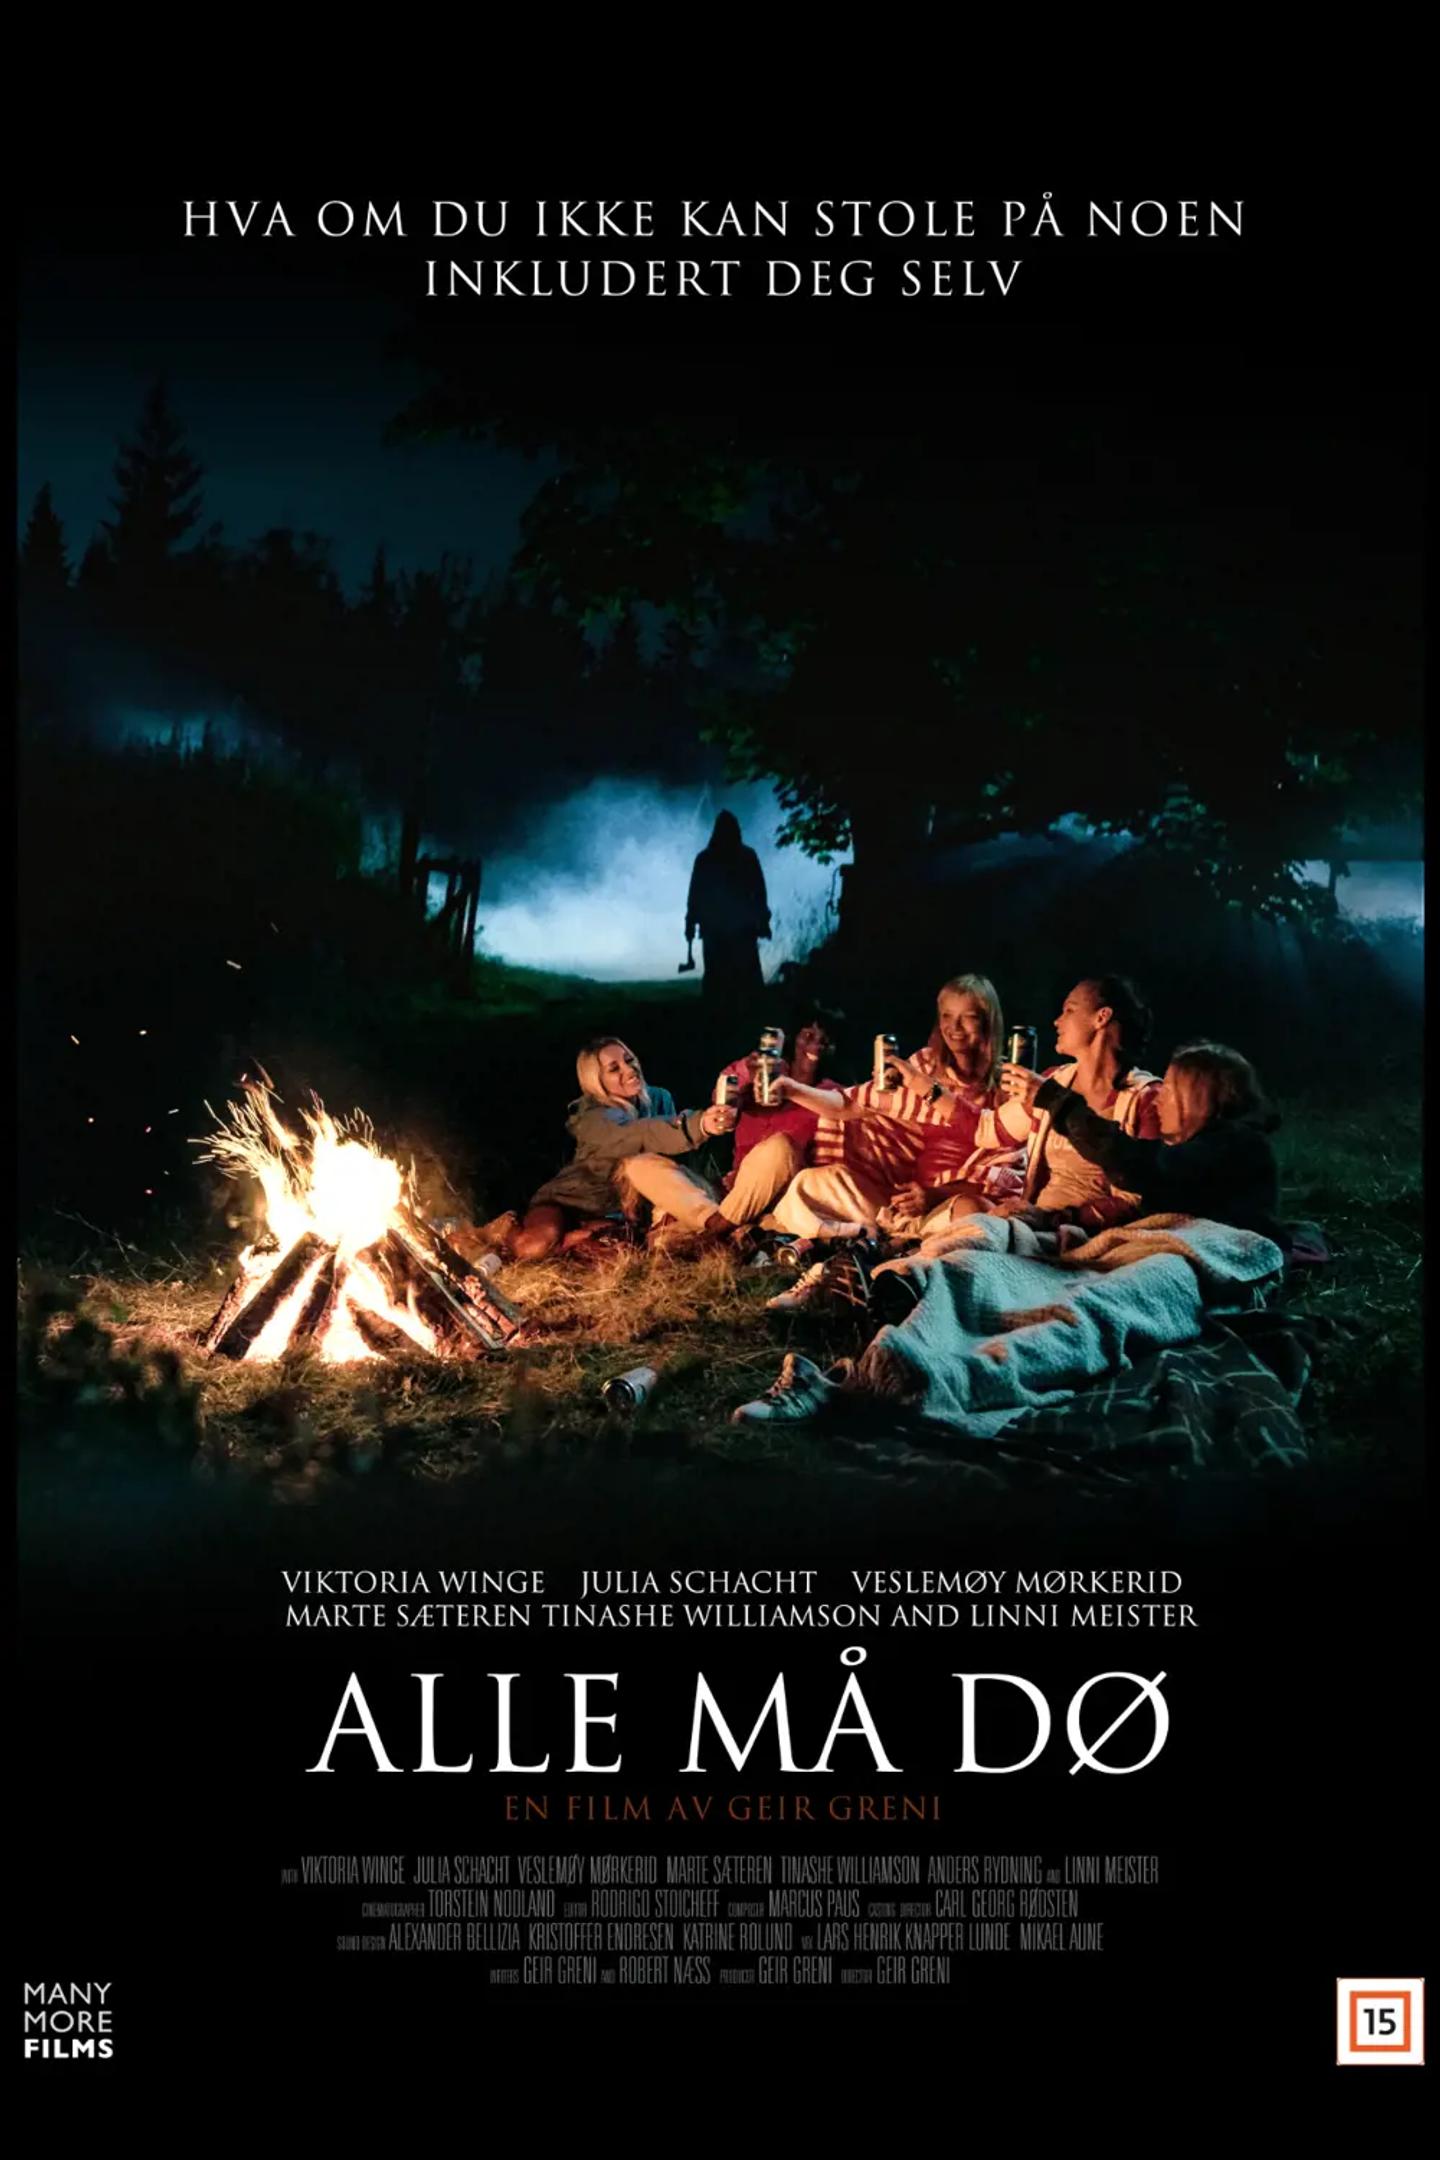 Plakat for 'Alle må dø'